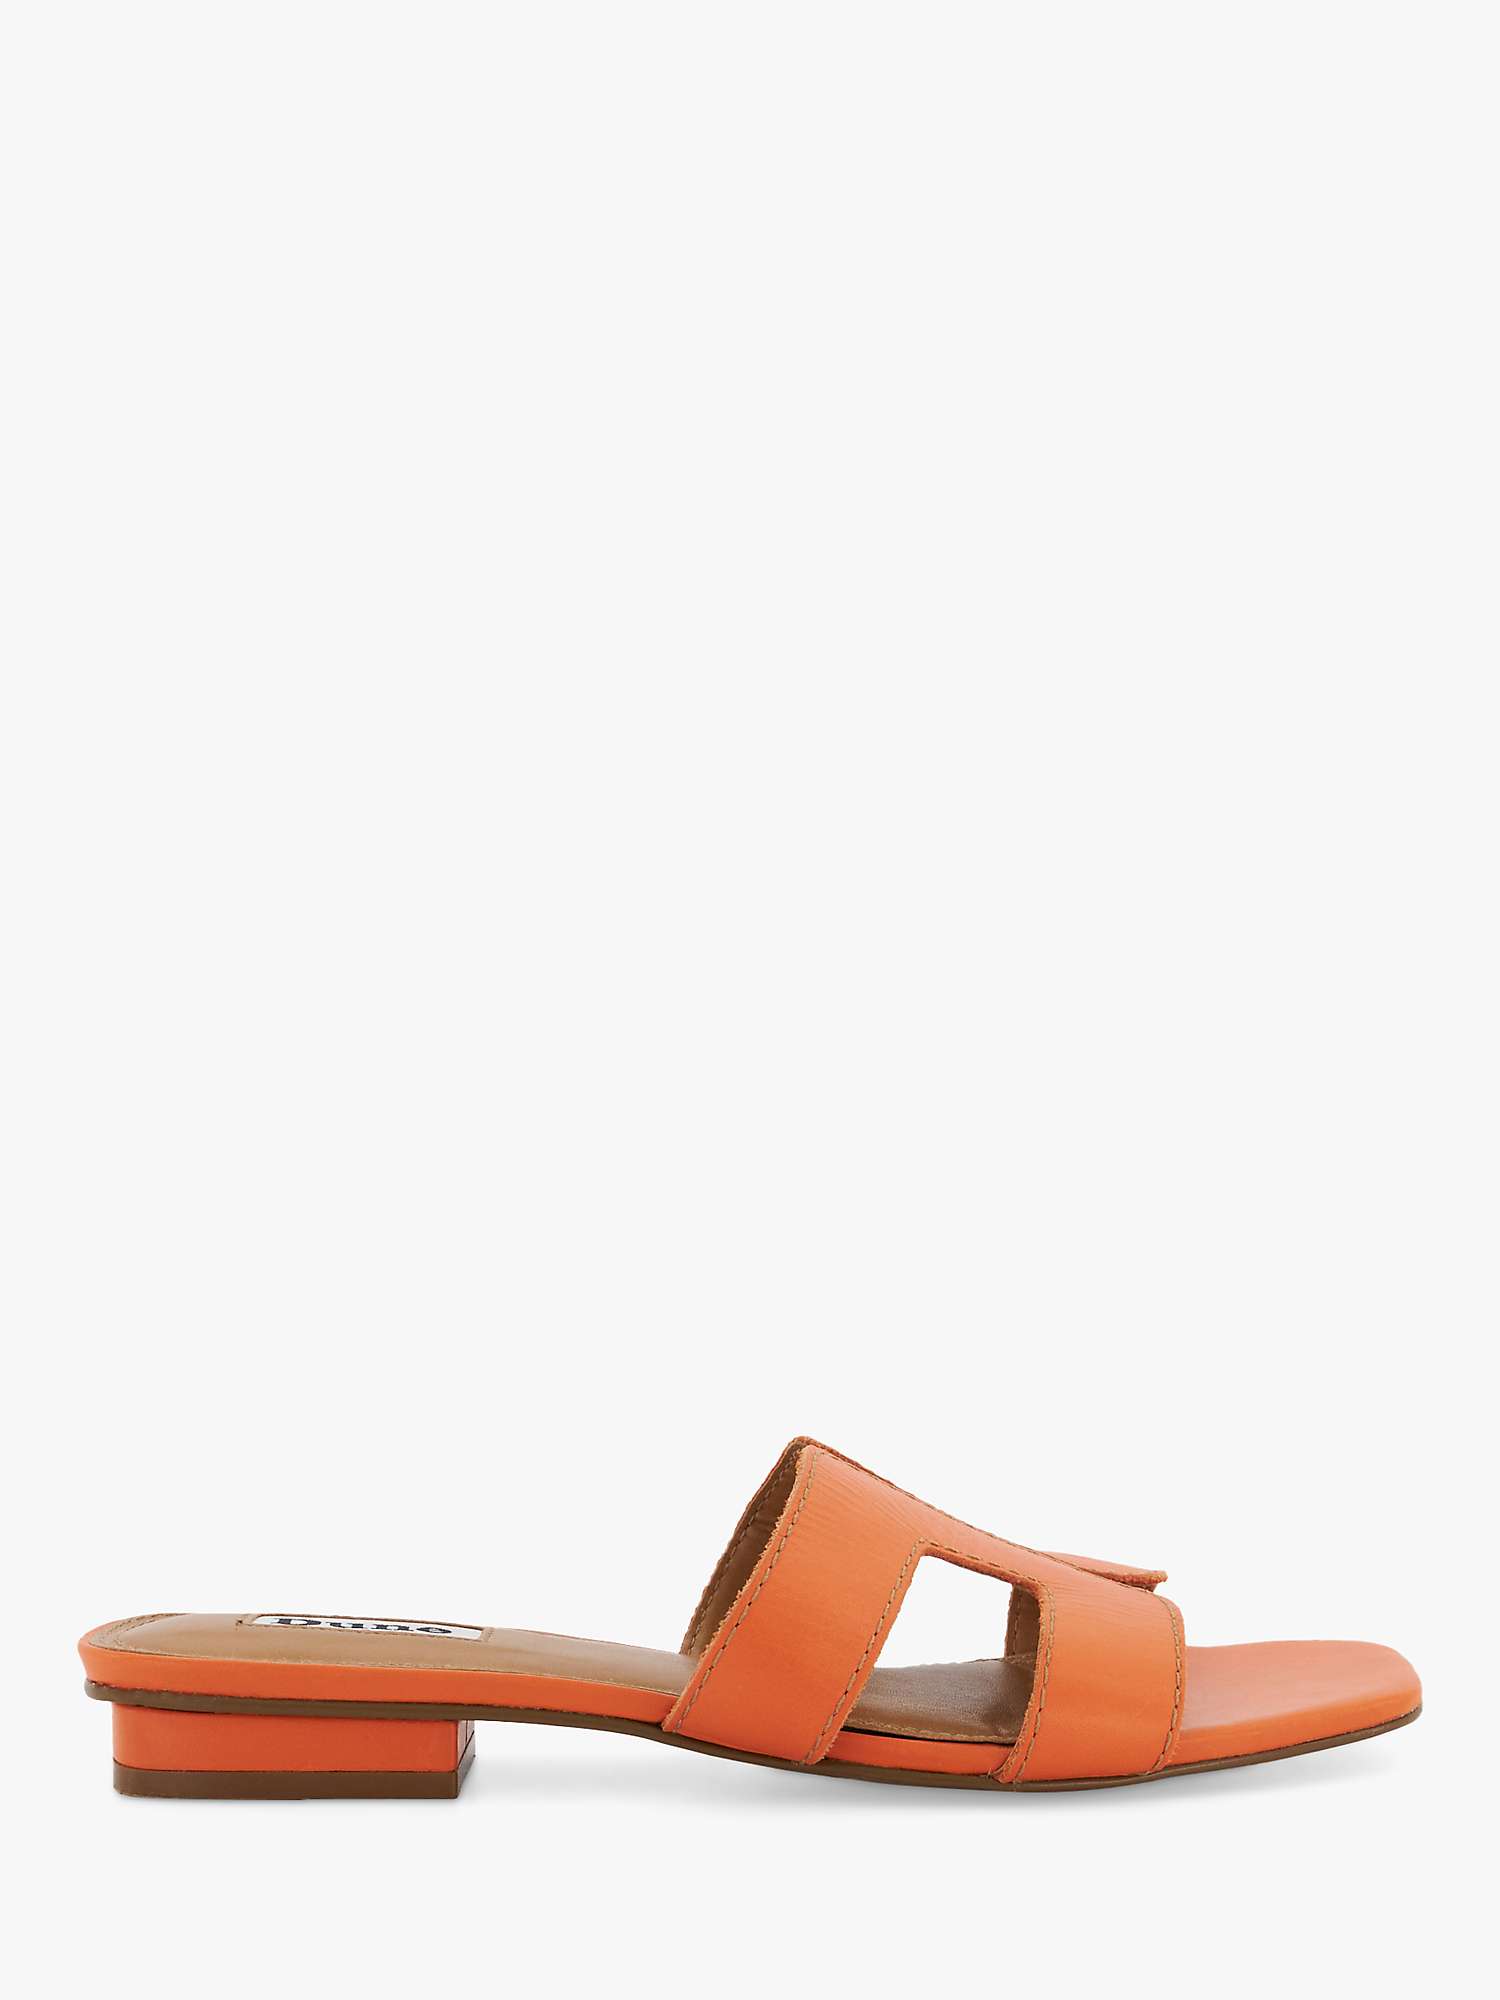 Buy Dune Loupe Leather Flat Slider Sandals, Orange Online at johnlewis.com